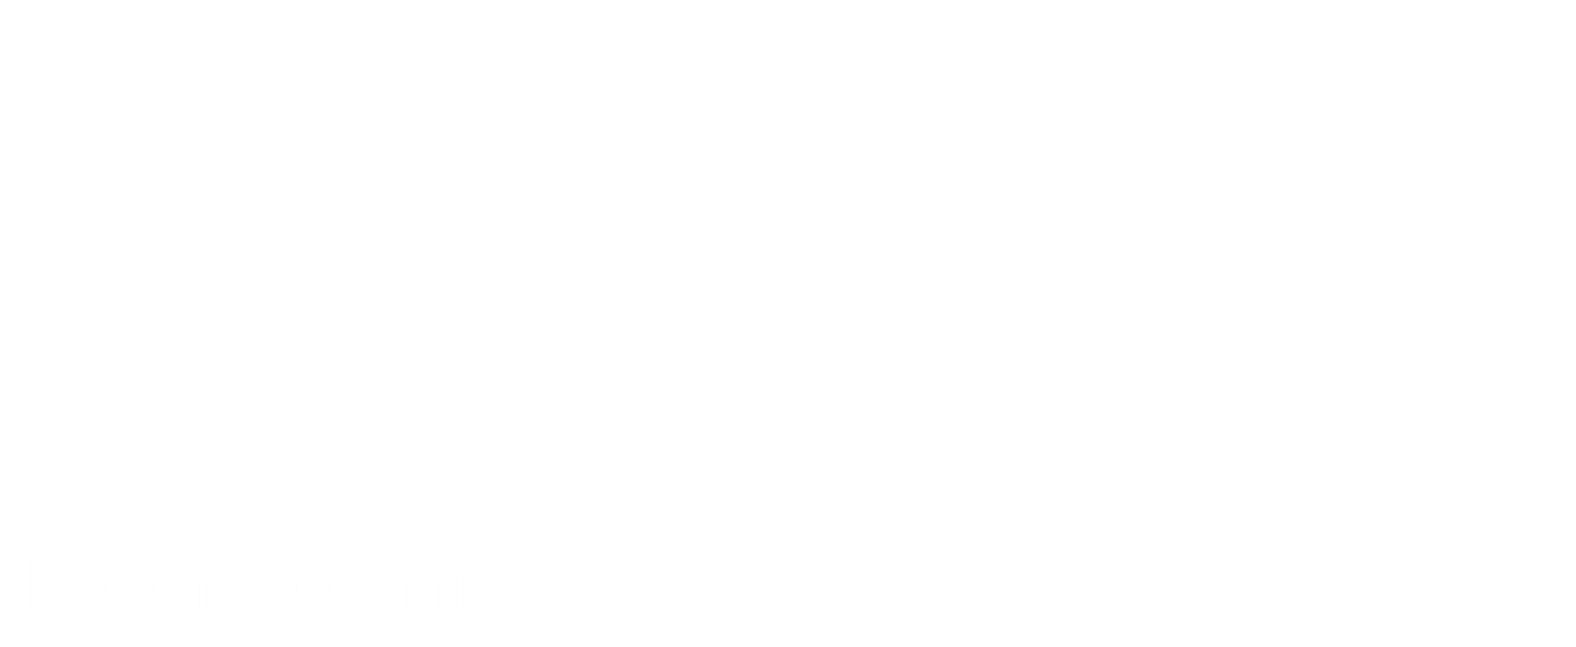 Steno Diabetes Center Odense